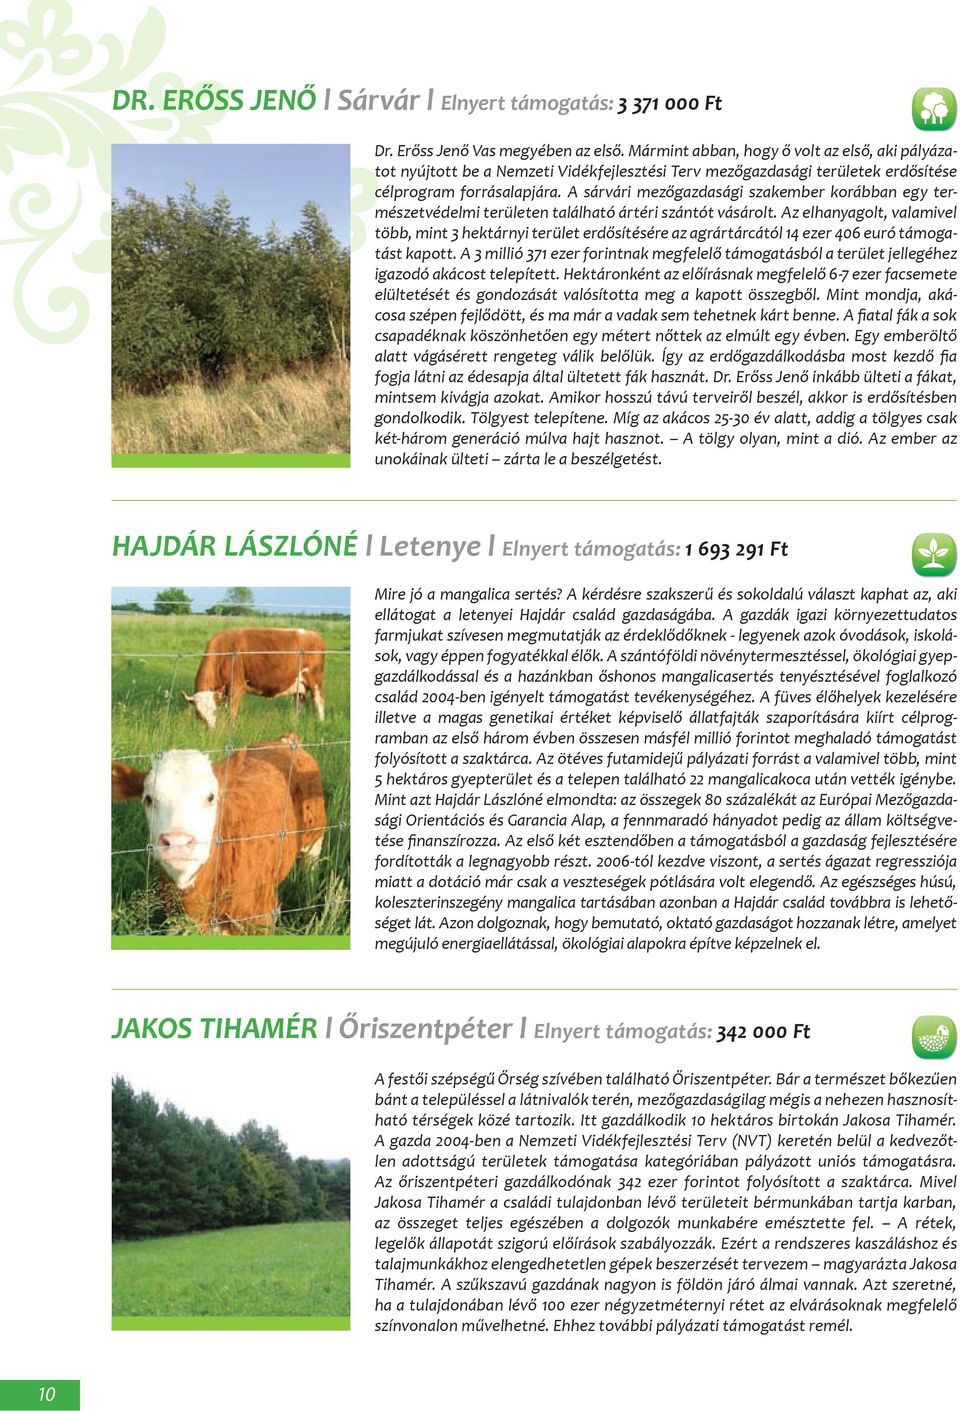 A sárvári mezőgazdasági szakember korábban egy természetvédelmi területen található ártéri szántót vásárolt.